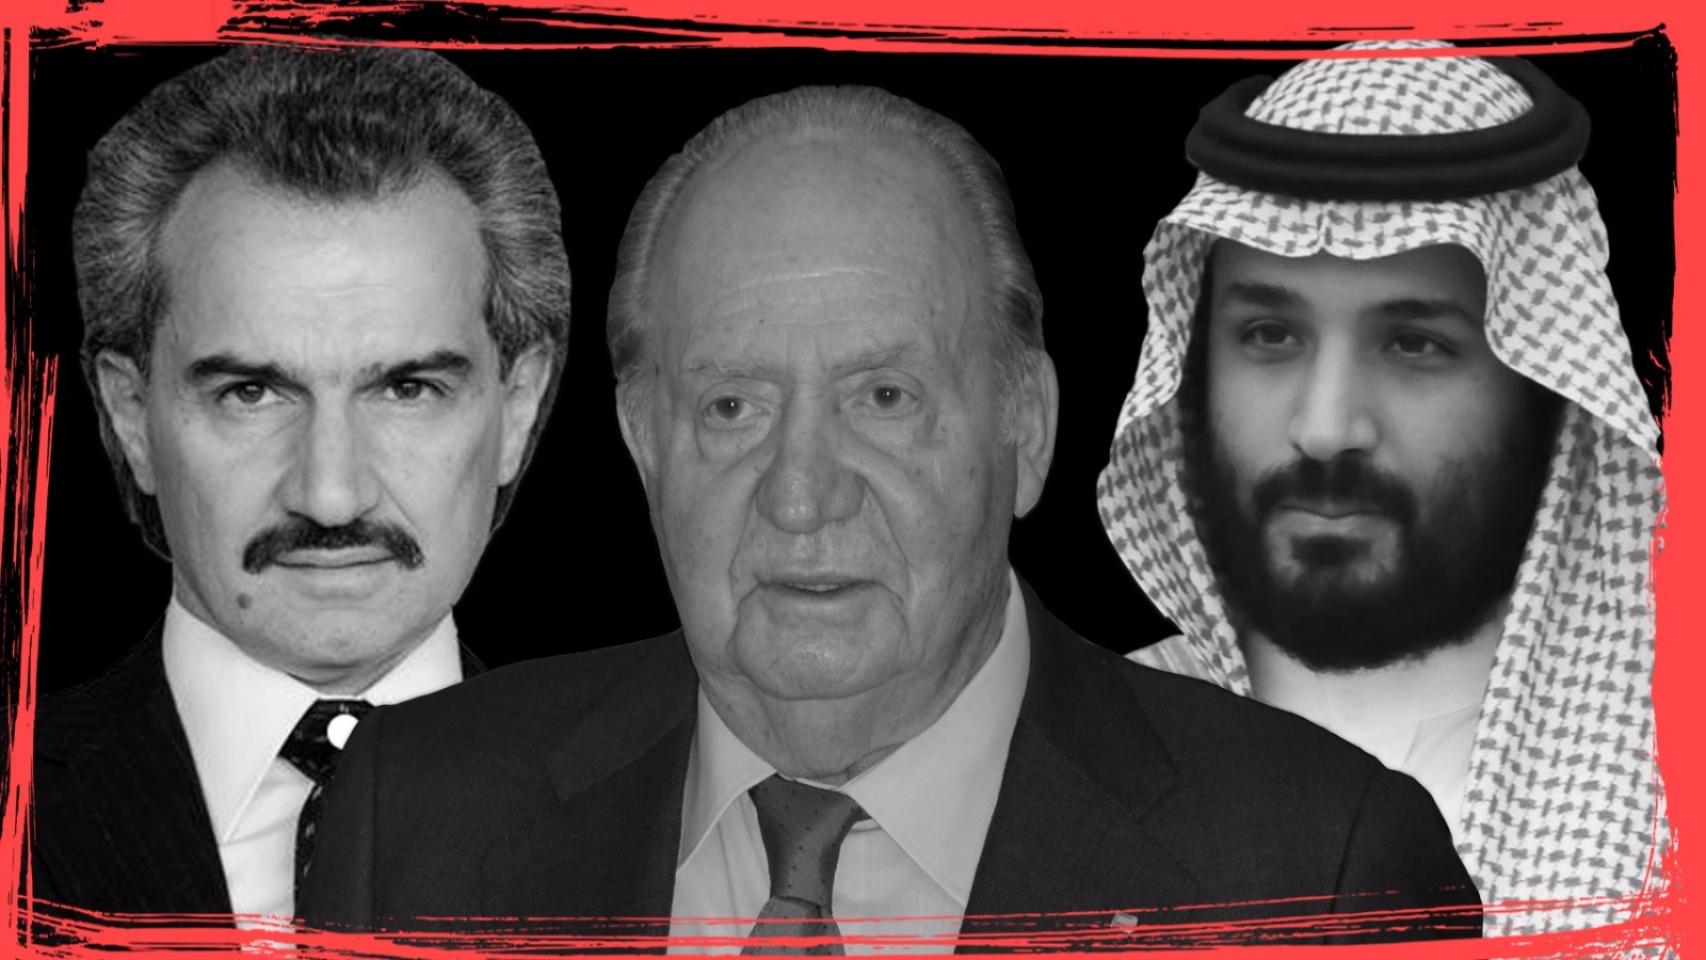 De izquierda a derecha, el príncipe saudí Al Waleed bin Talal bin Abdulaziz al Saud, quien estuvo acusado de violación; el rey emérito Juan Carlos I, y el heredero al trono de Arabia Saudí y actual ministro de Defensa, Mohamed bin Salman.